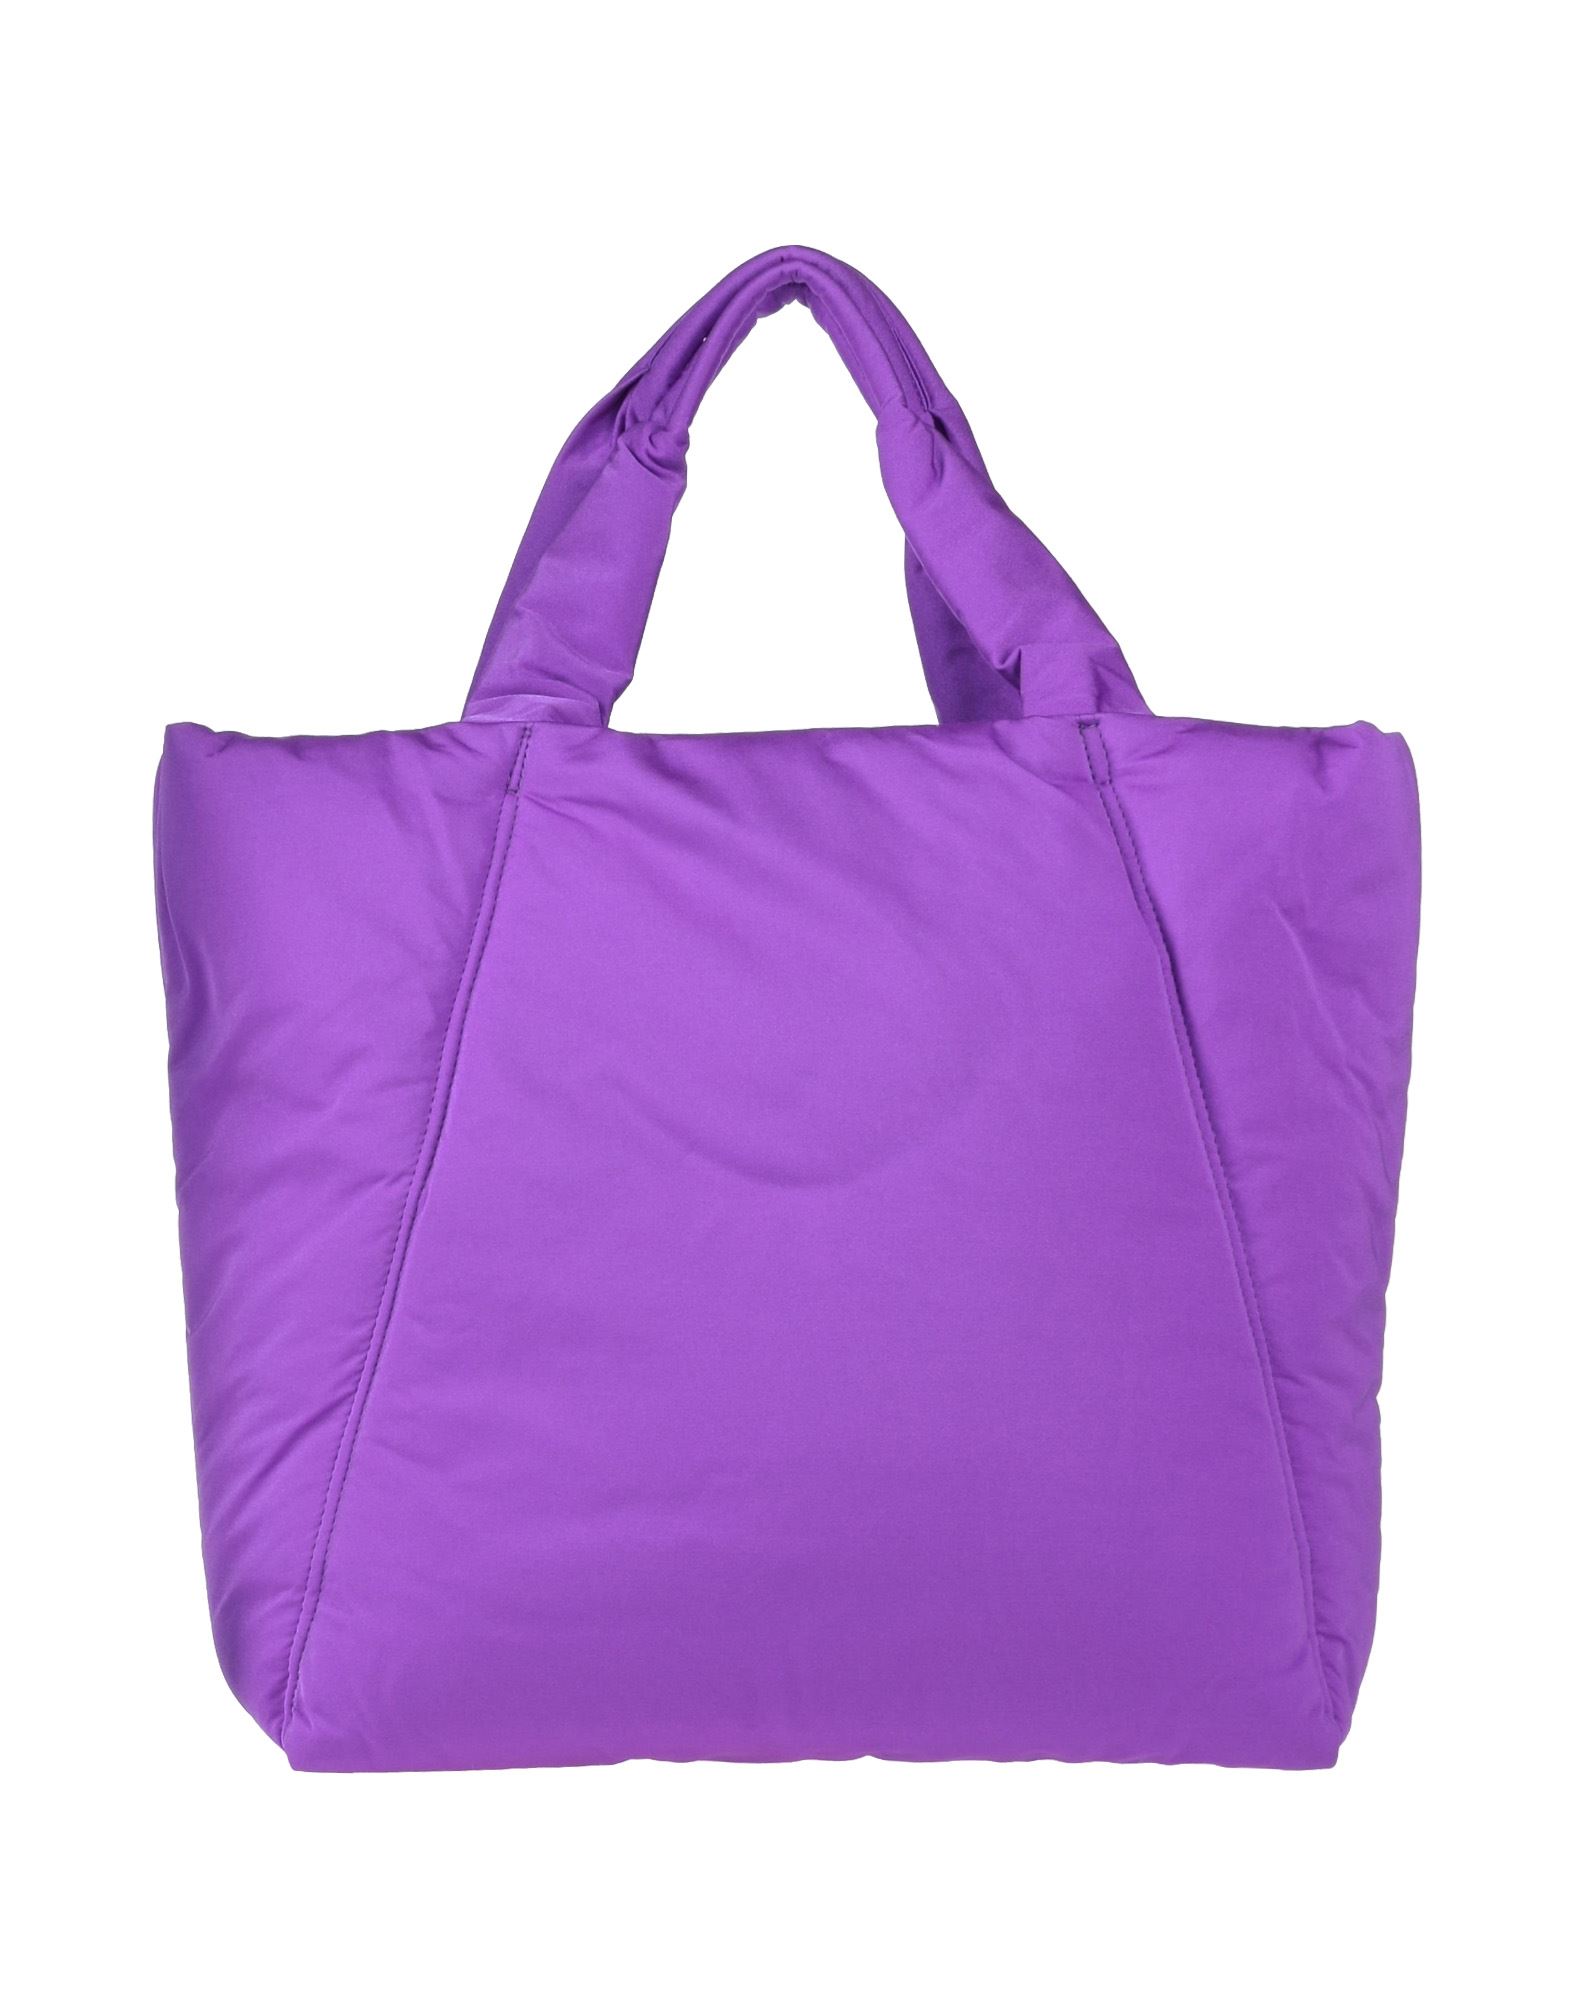 Space Simona Corsellini Handbags In Purple